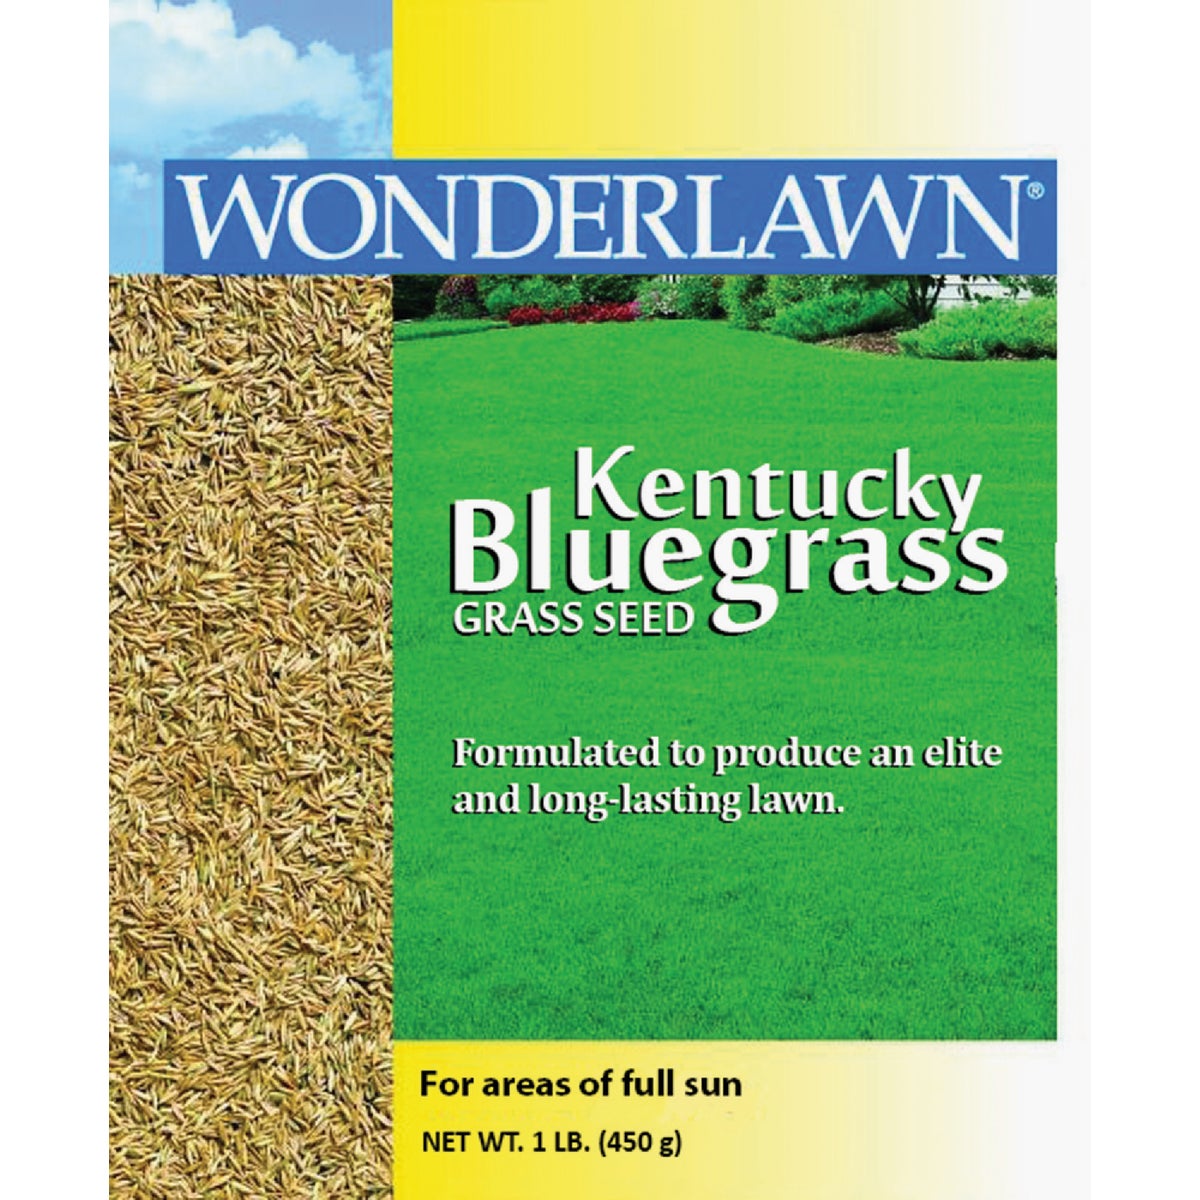 Item 763128, Kentucky bluegrass grass seed.